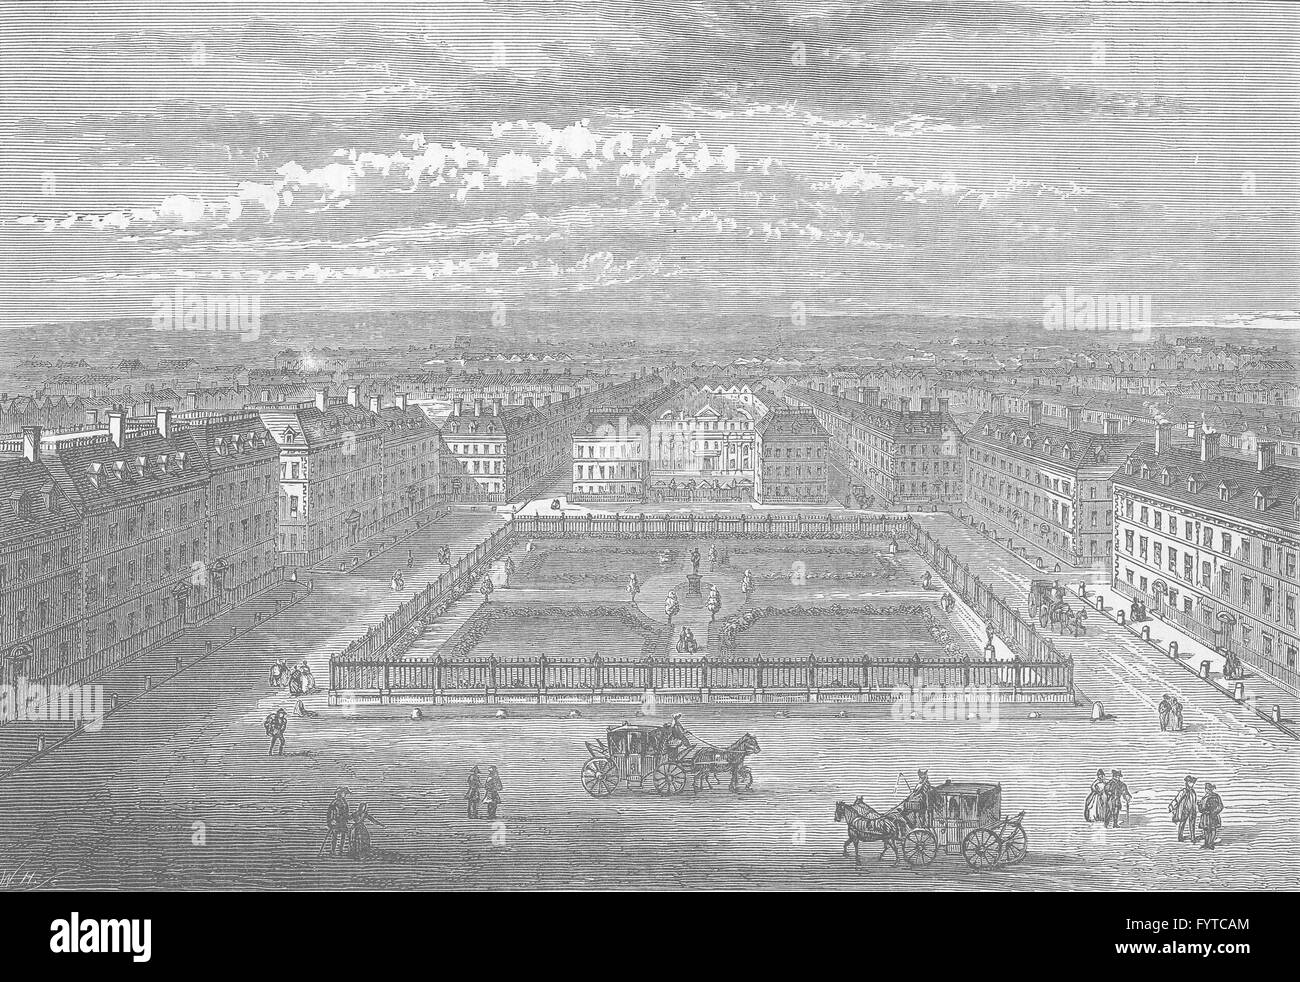 : SOHO Soho Square, 1700. Londres, antique print c1880 Banque D'Images